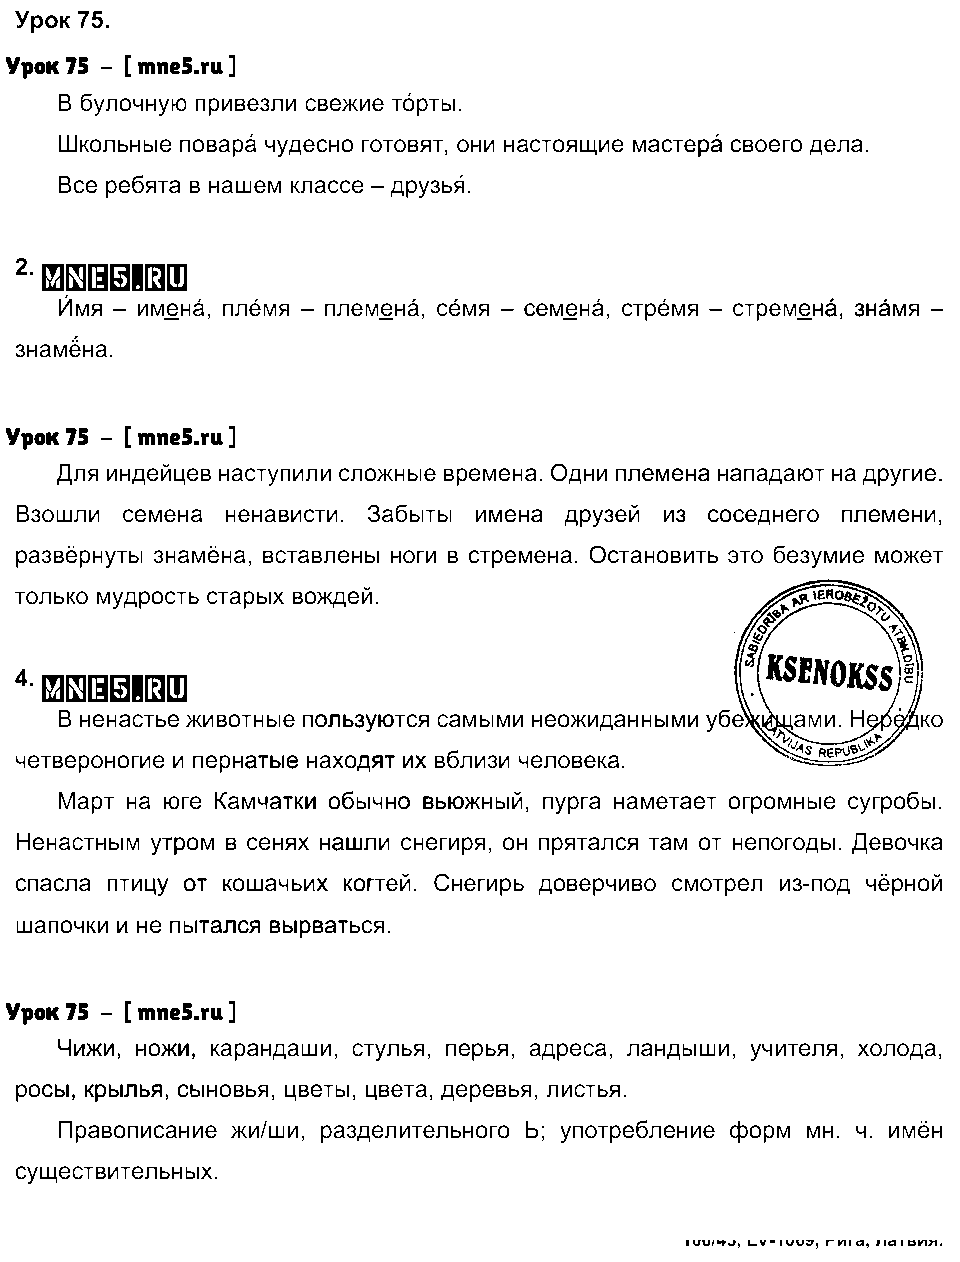 ГДЗ Русский язык 3 класс - Урок 75